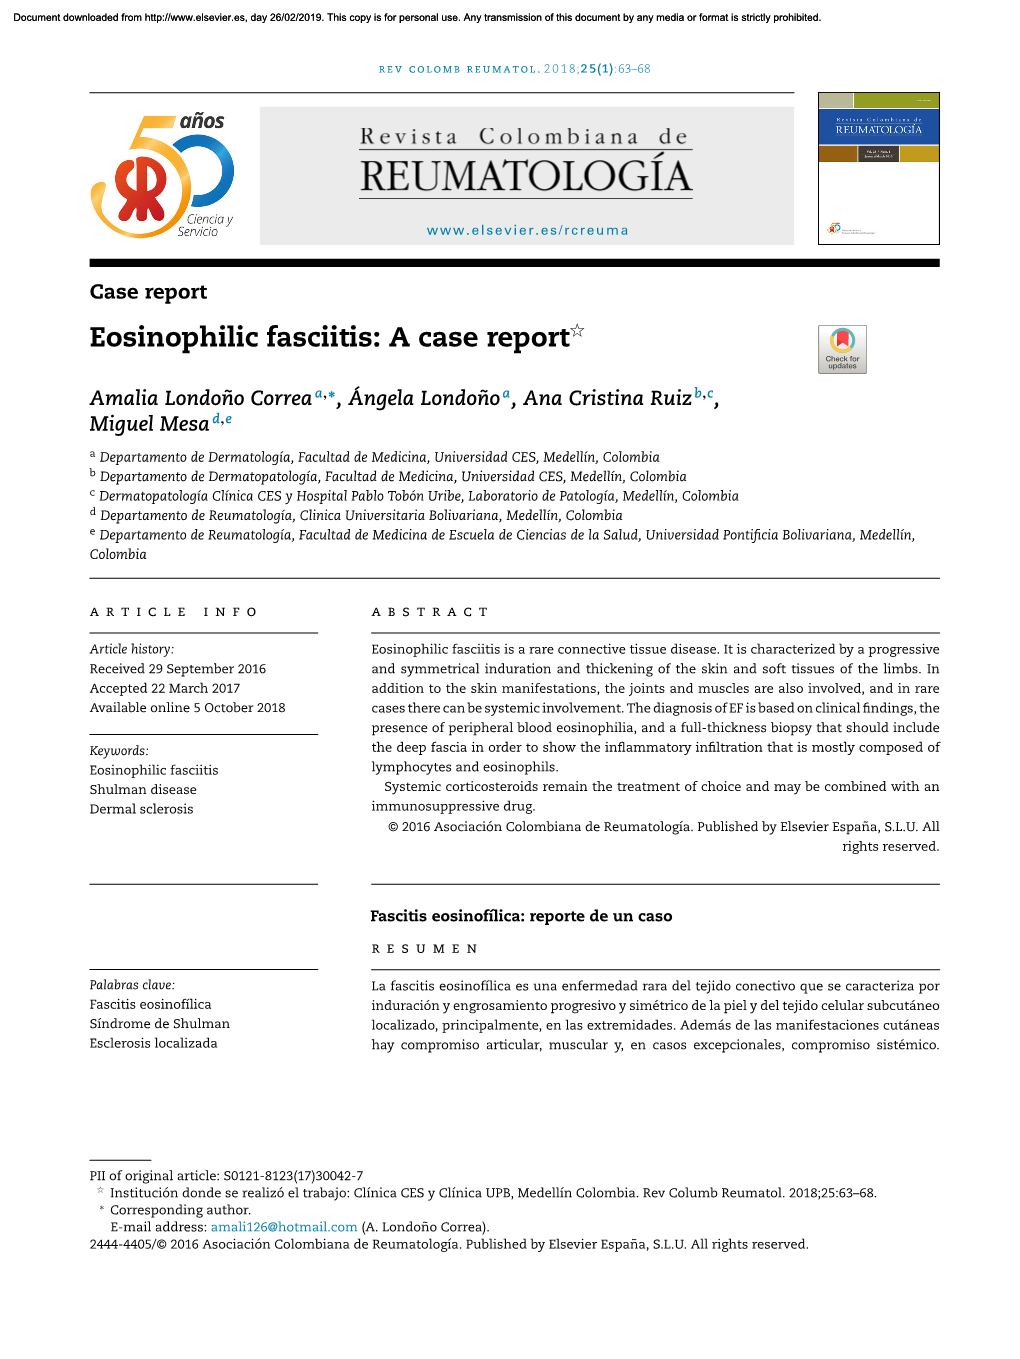 Eosinophilic Fasciitis: a Case Report